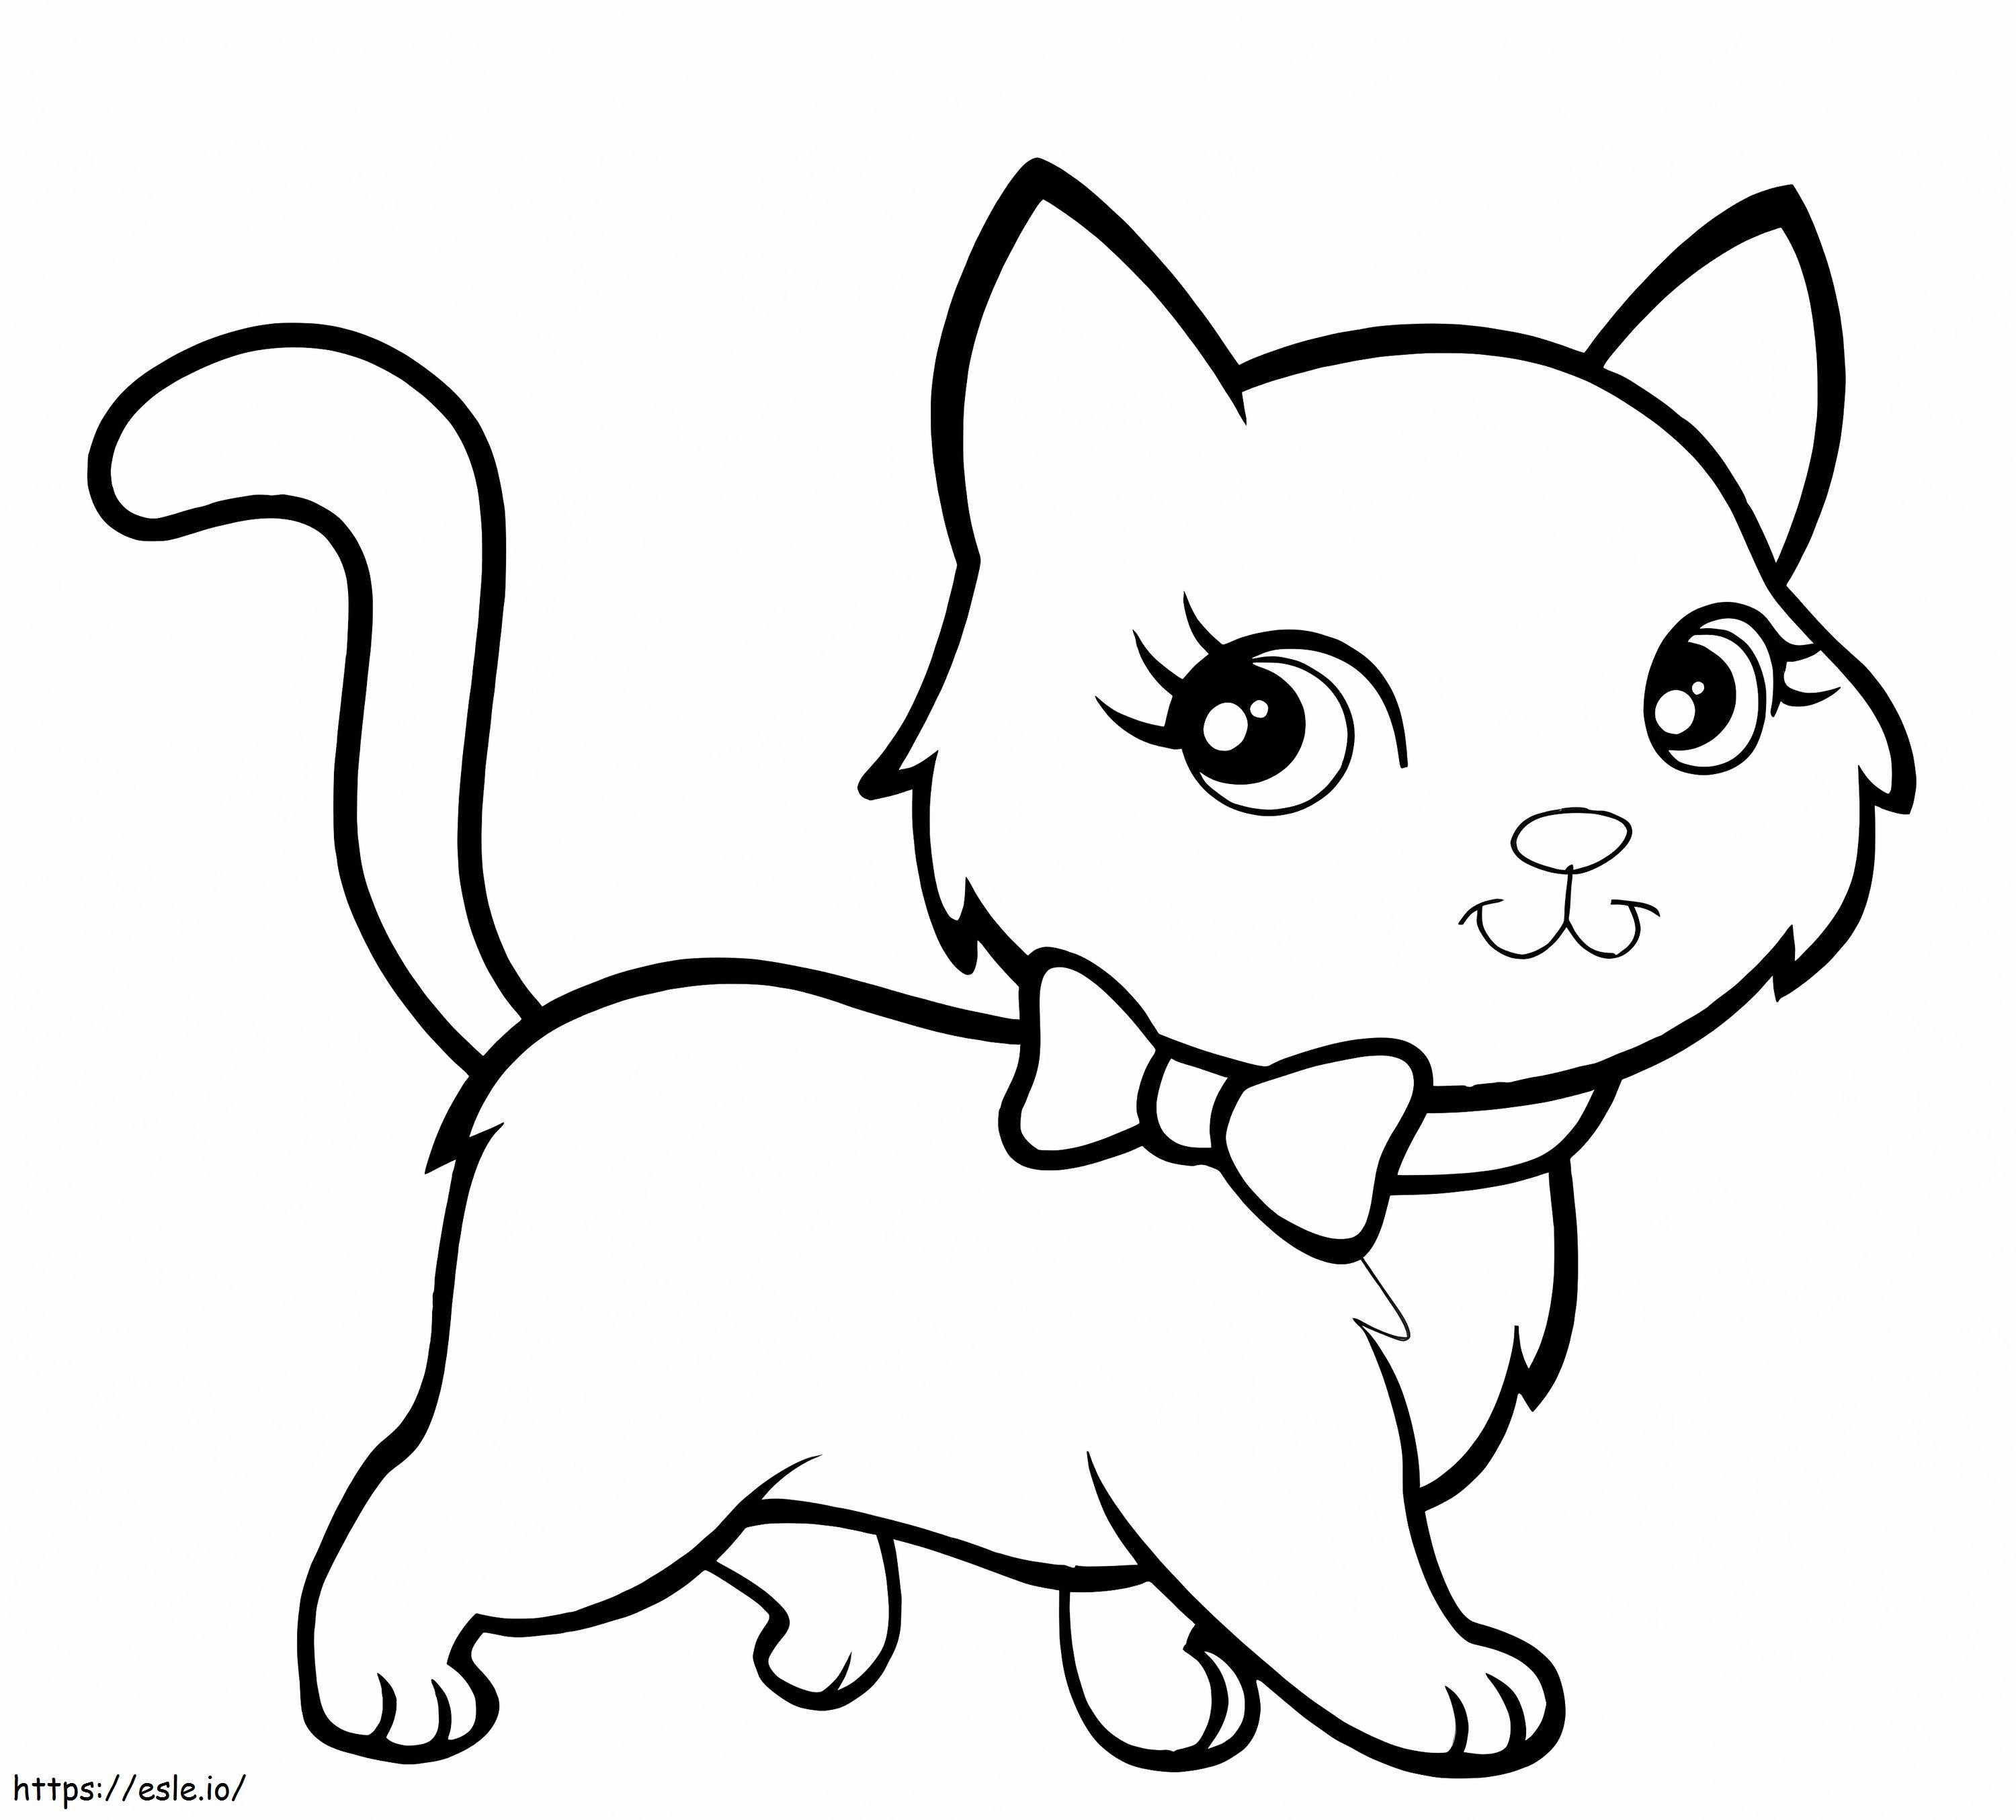 Kitten Walking coloring page